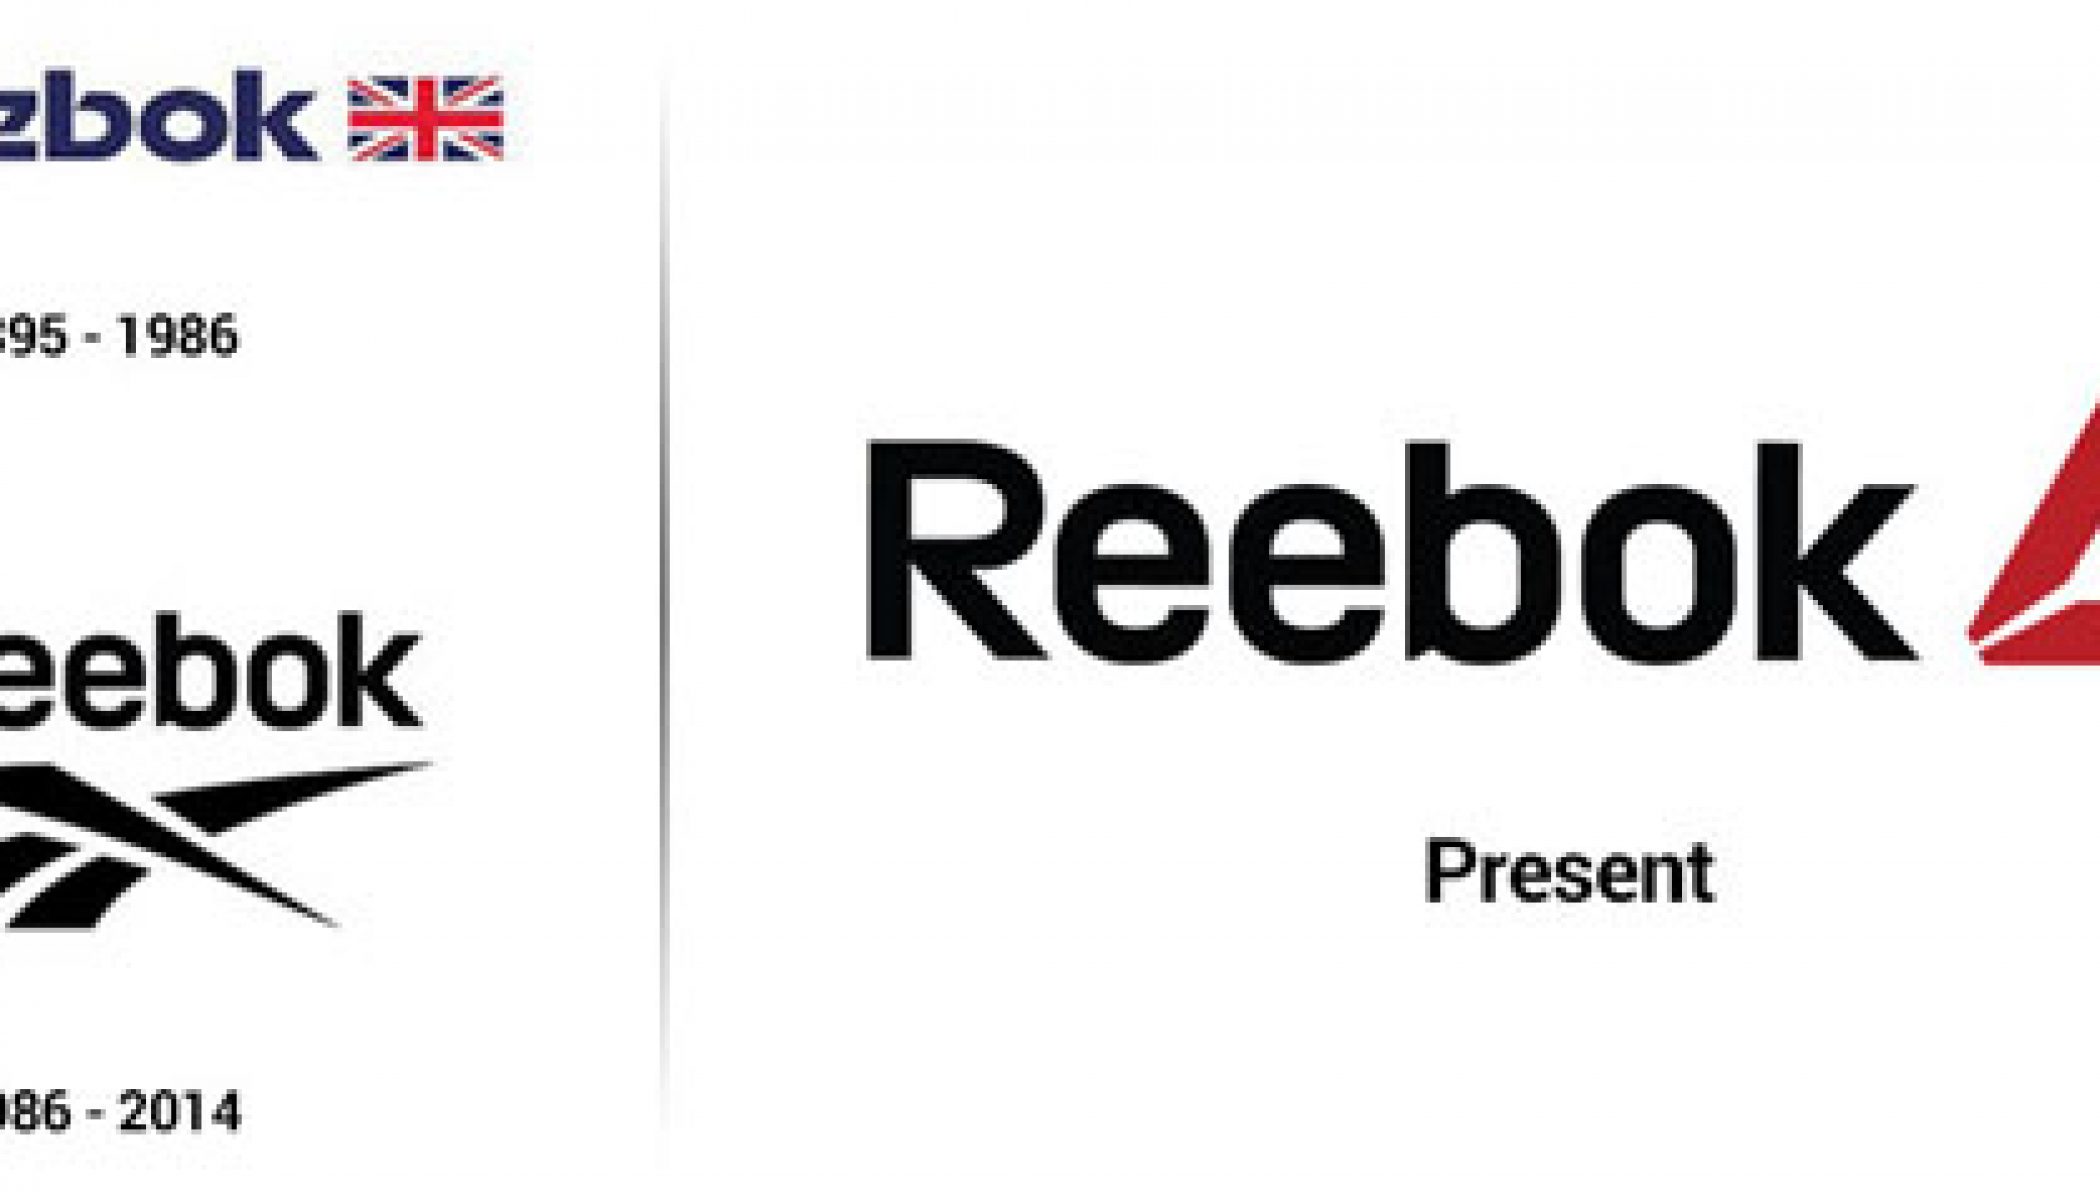 reebok change logo